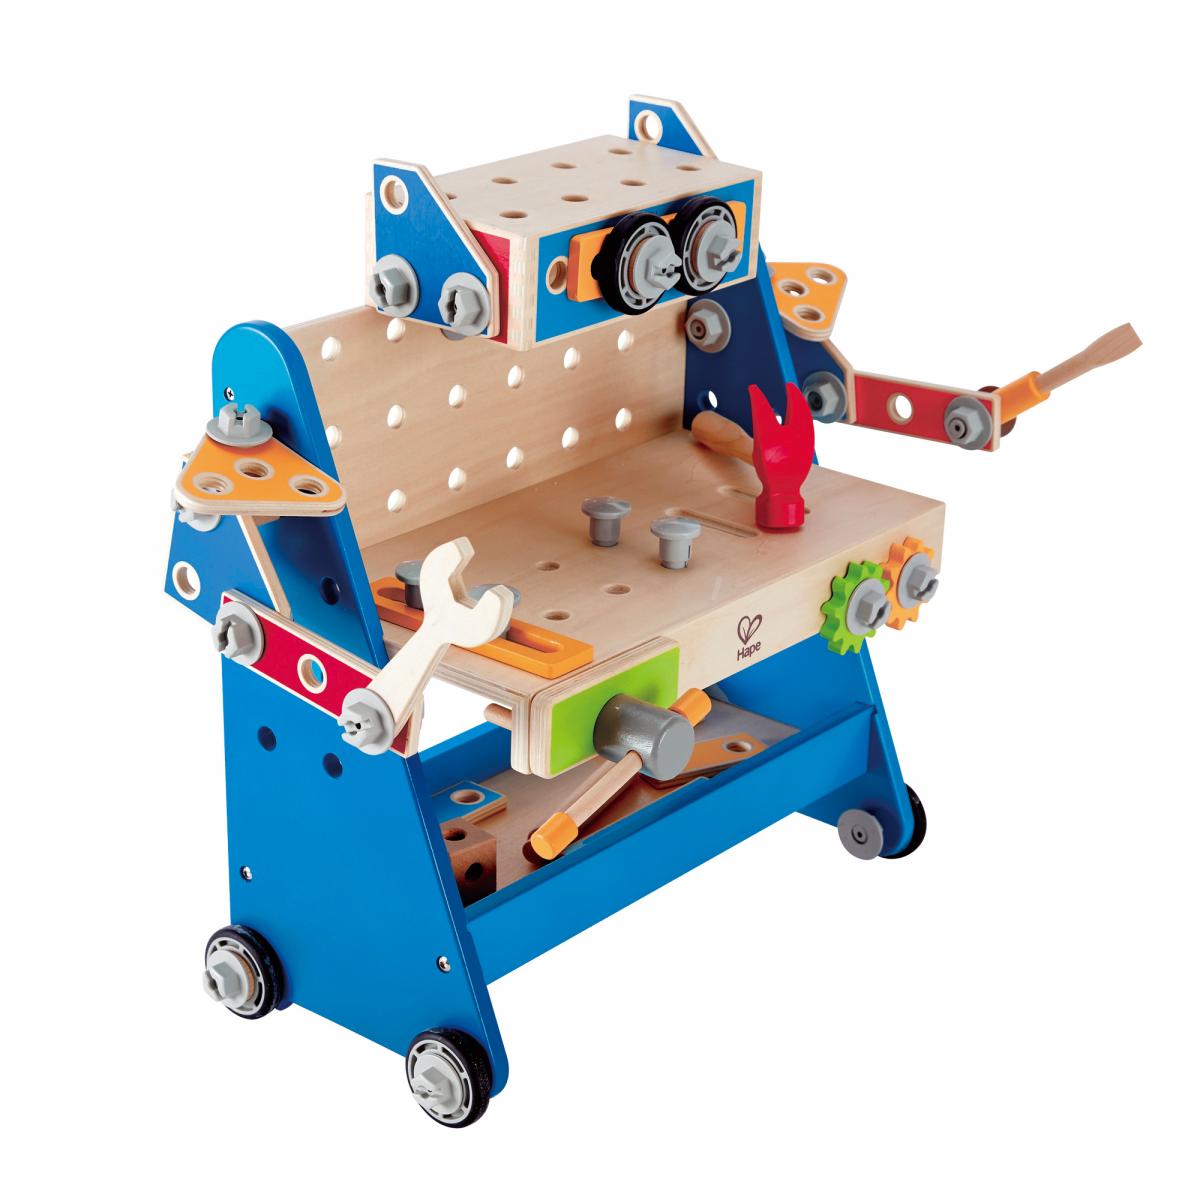 機械人建造工作檯 | 搭建玩具 | E8174